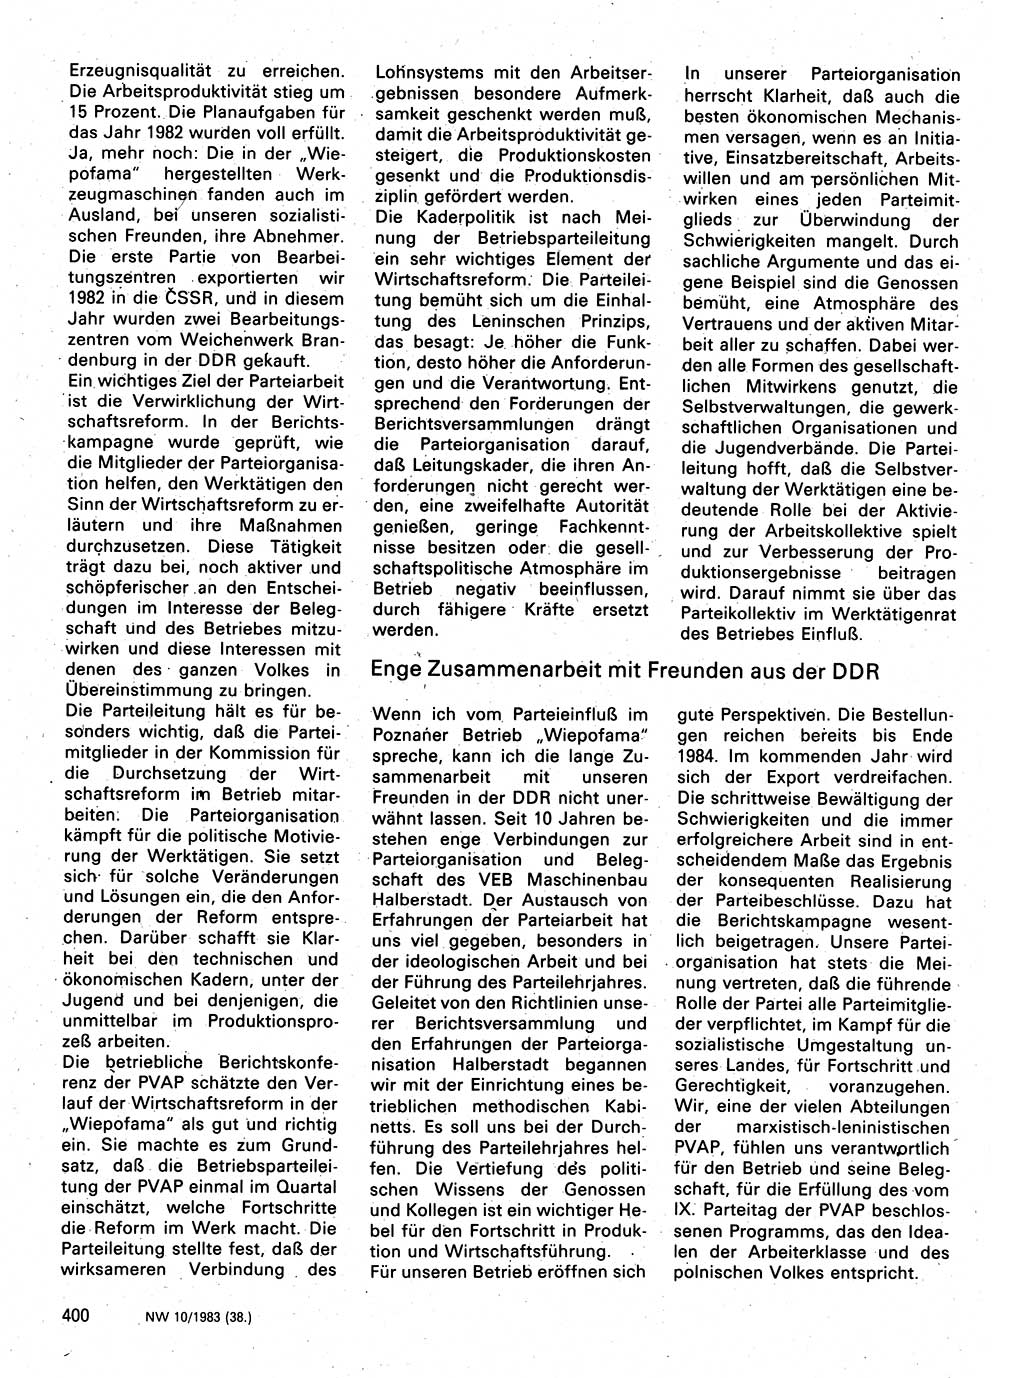 Neuer Weg (NW), Organ des Zentralkomitees (ZK) der SED (Sozialistische Einheitspartei Deutschlands) für Fragen des Parteilebens, 38. Jahrgang [Deutsche Demokratische Republik (DDR)] 1983, Seite 400 (NW ZK SED DDR 1983, S. 400)